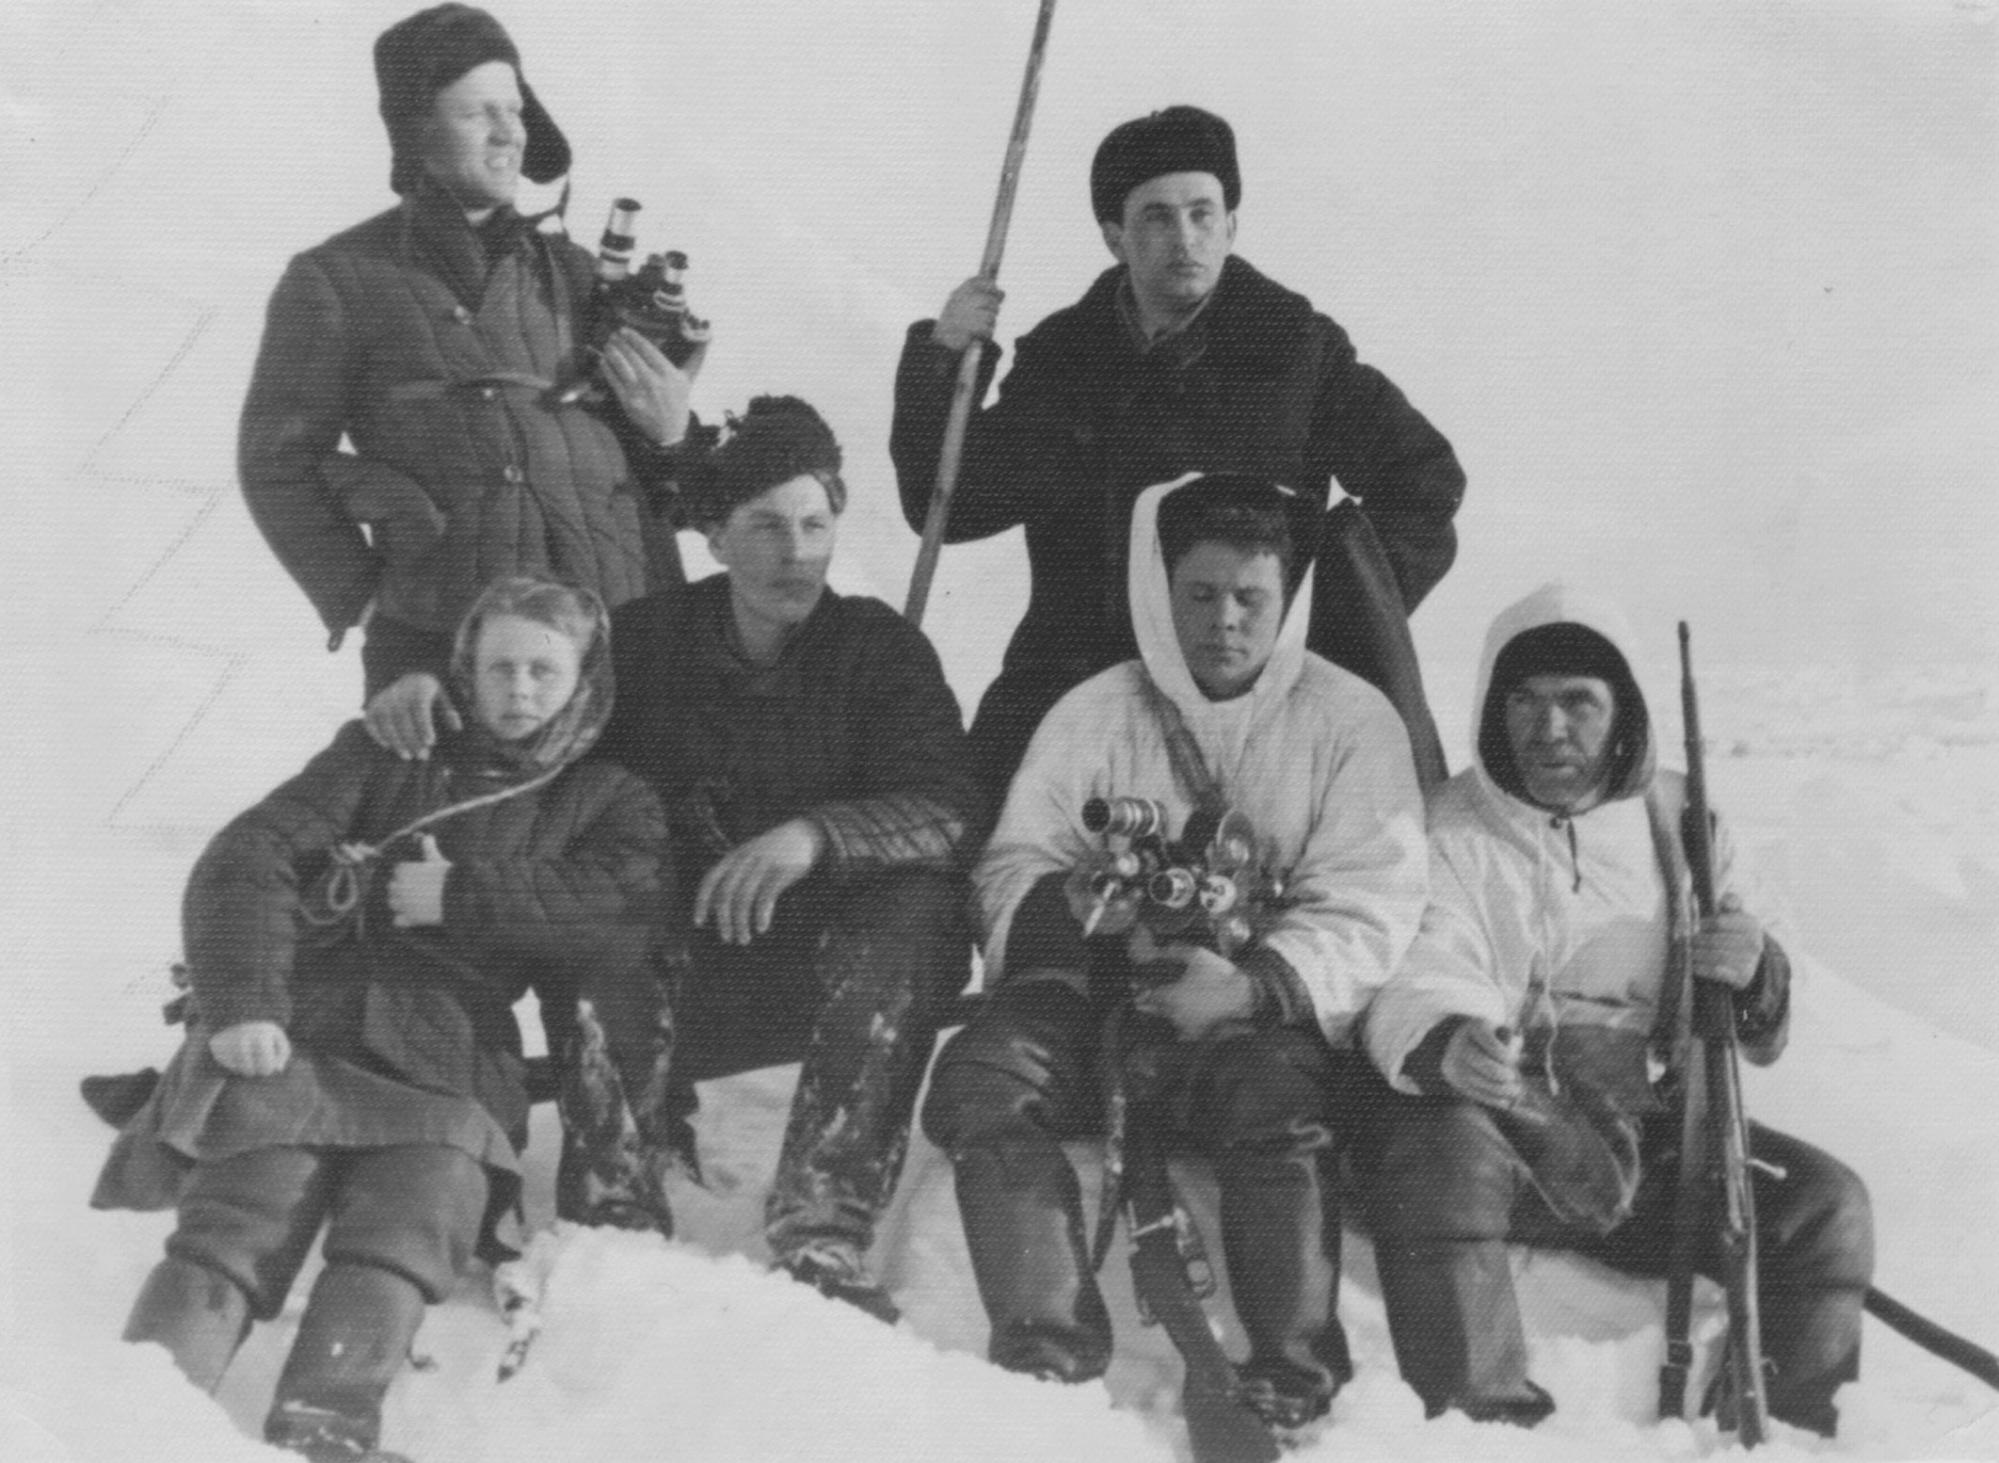 Съёмочная группа фильма ЗА МОРСКИМ ЗВЕРЕМ (1954) с охотниками-поморами. На фото (стоит справа): Леонид Браславский. Фото из личного архива Марины Браславской.